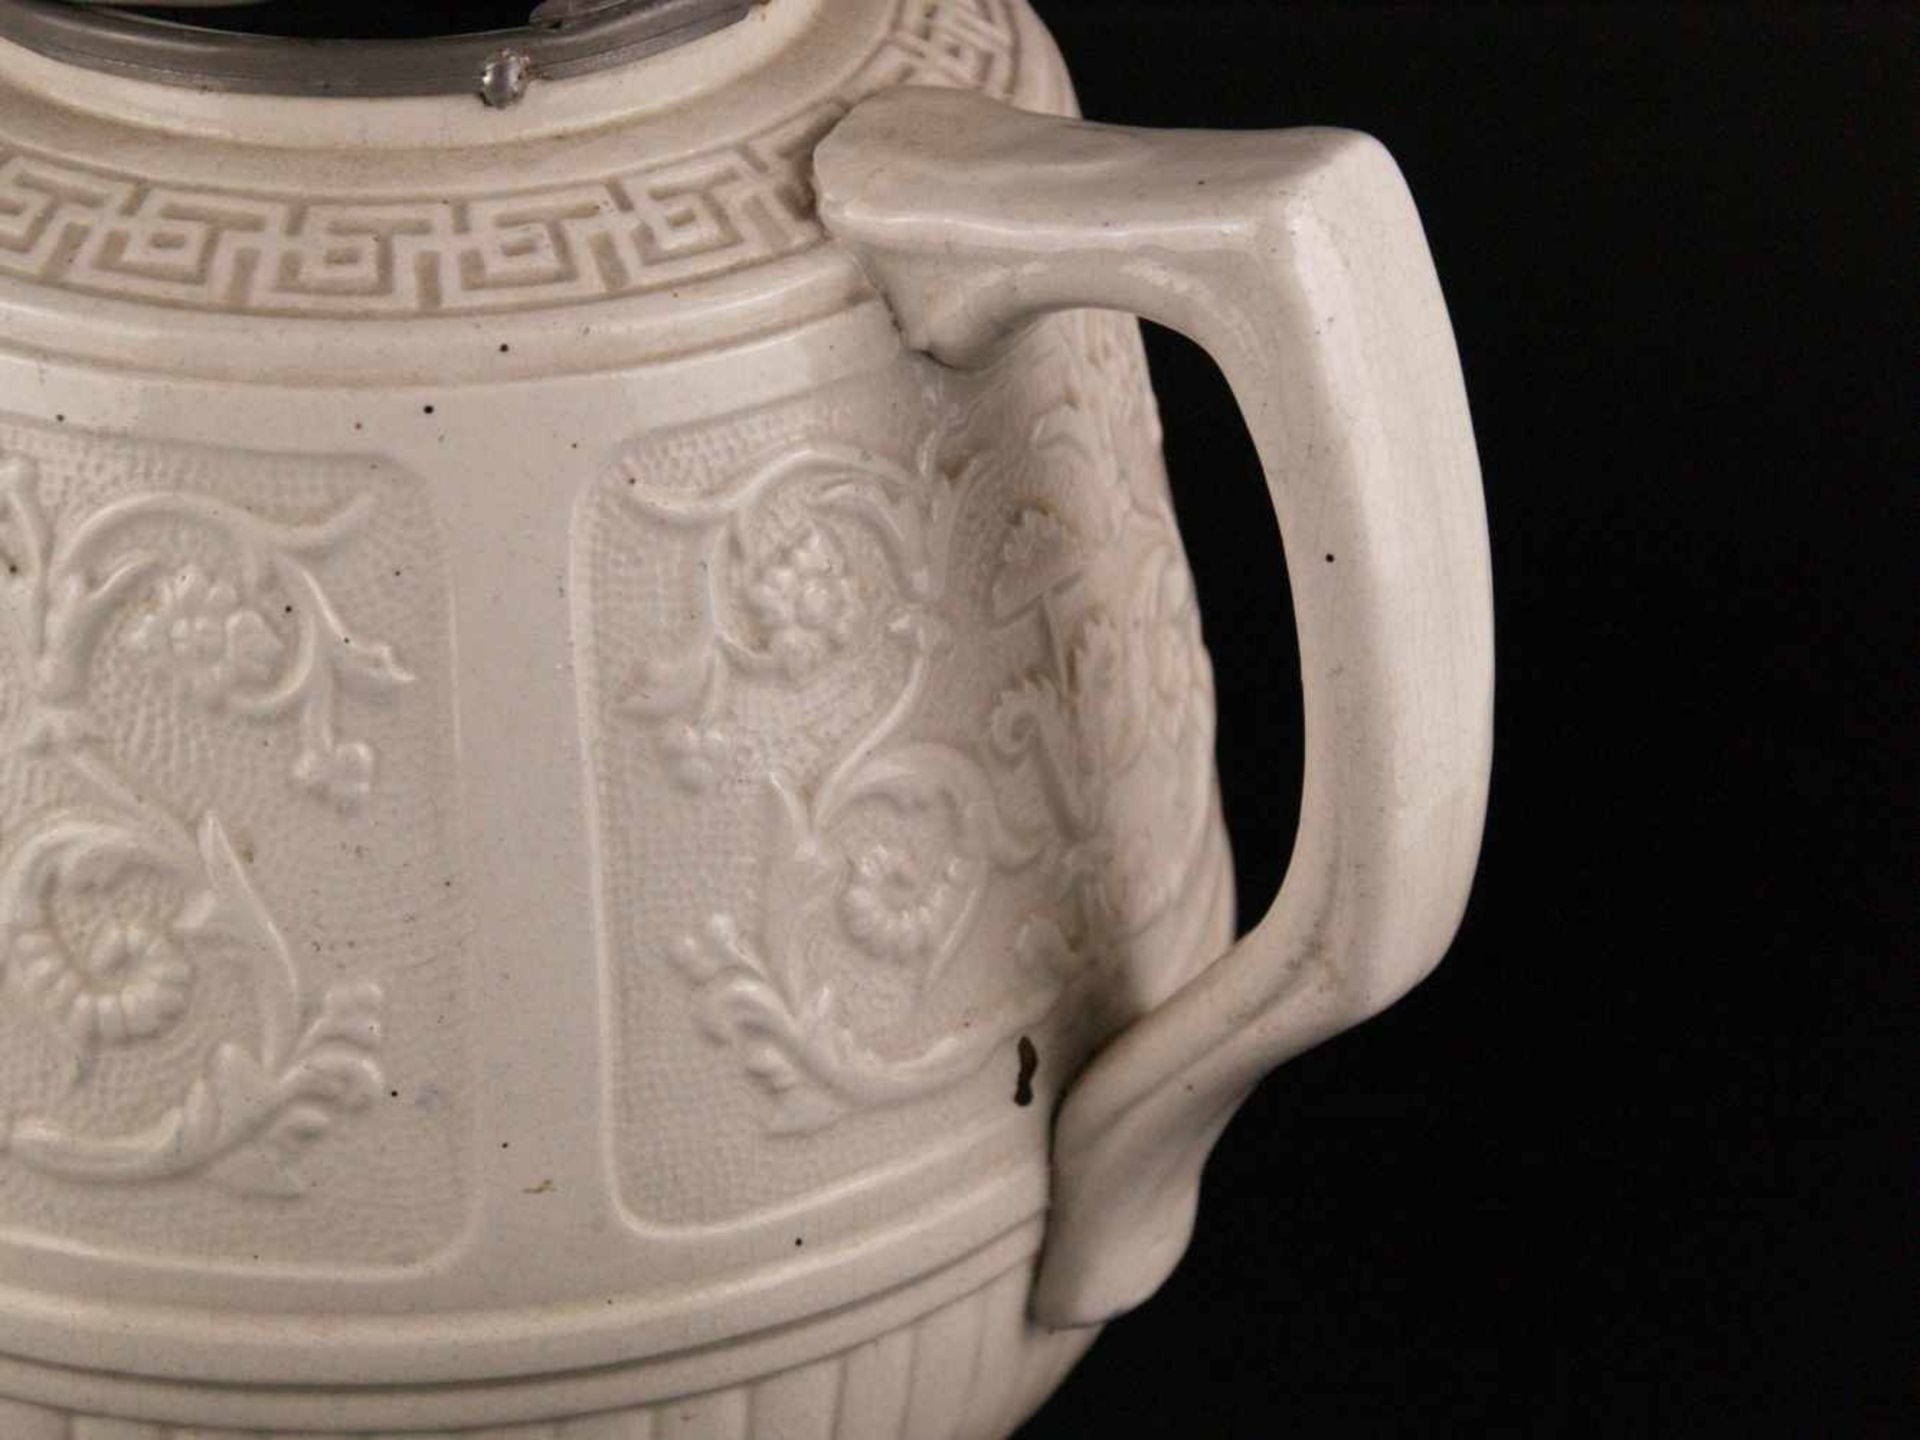 Große Teekanne - England 19.Jh., Steingut, cremefarben glasiert, mit ostasiatischem Reliefdekor, - Bild 7 aus 9